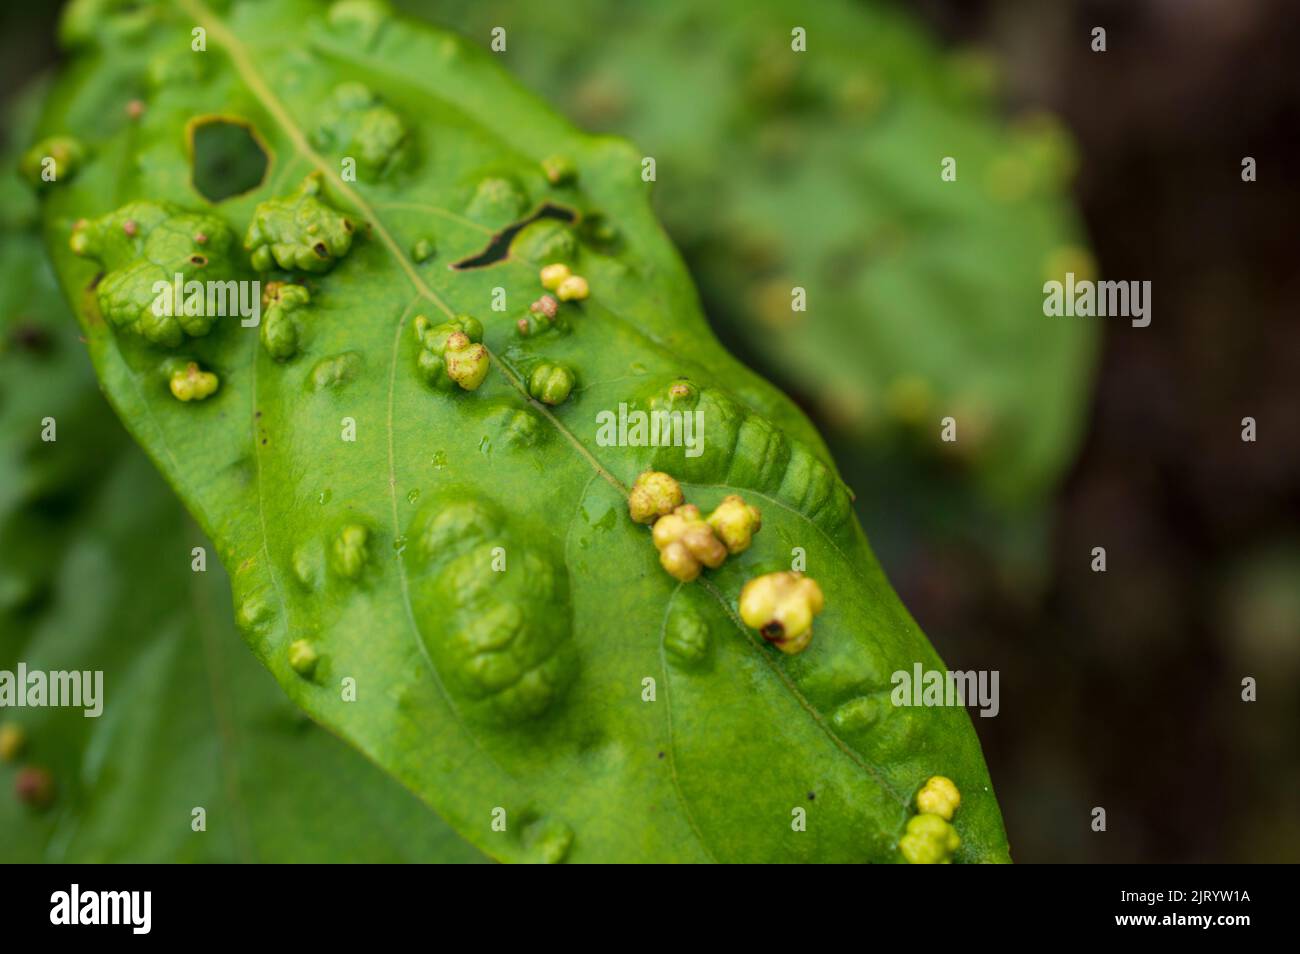 Le malattie infettive delle piante sono causate da agenti viventi o patogeni. Qui sono alcune foglie verdi infette in fuoco. Foto Stock